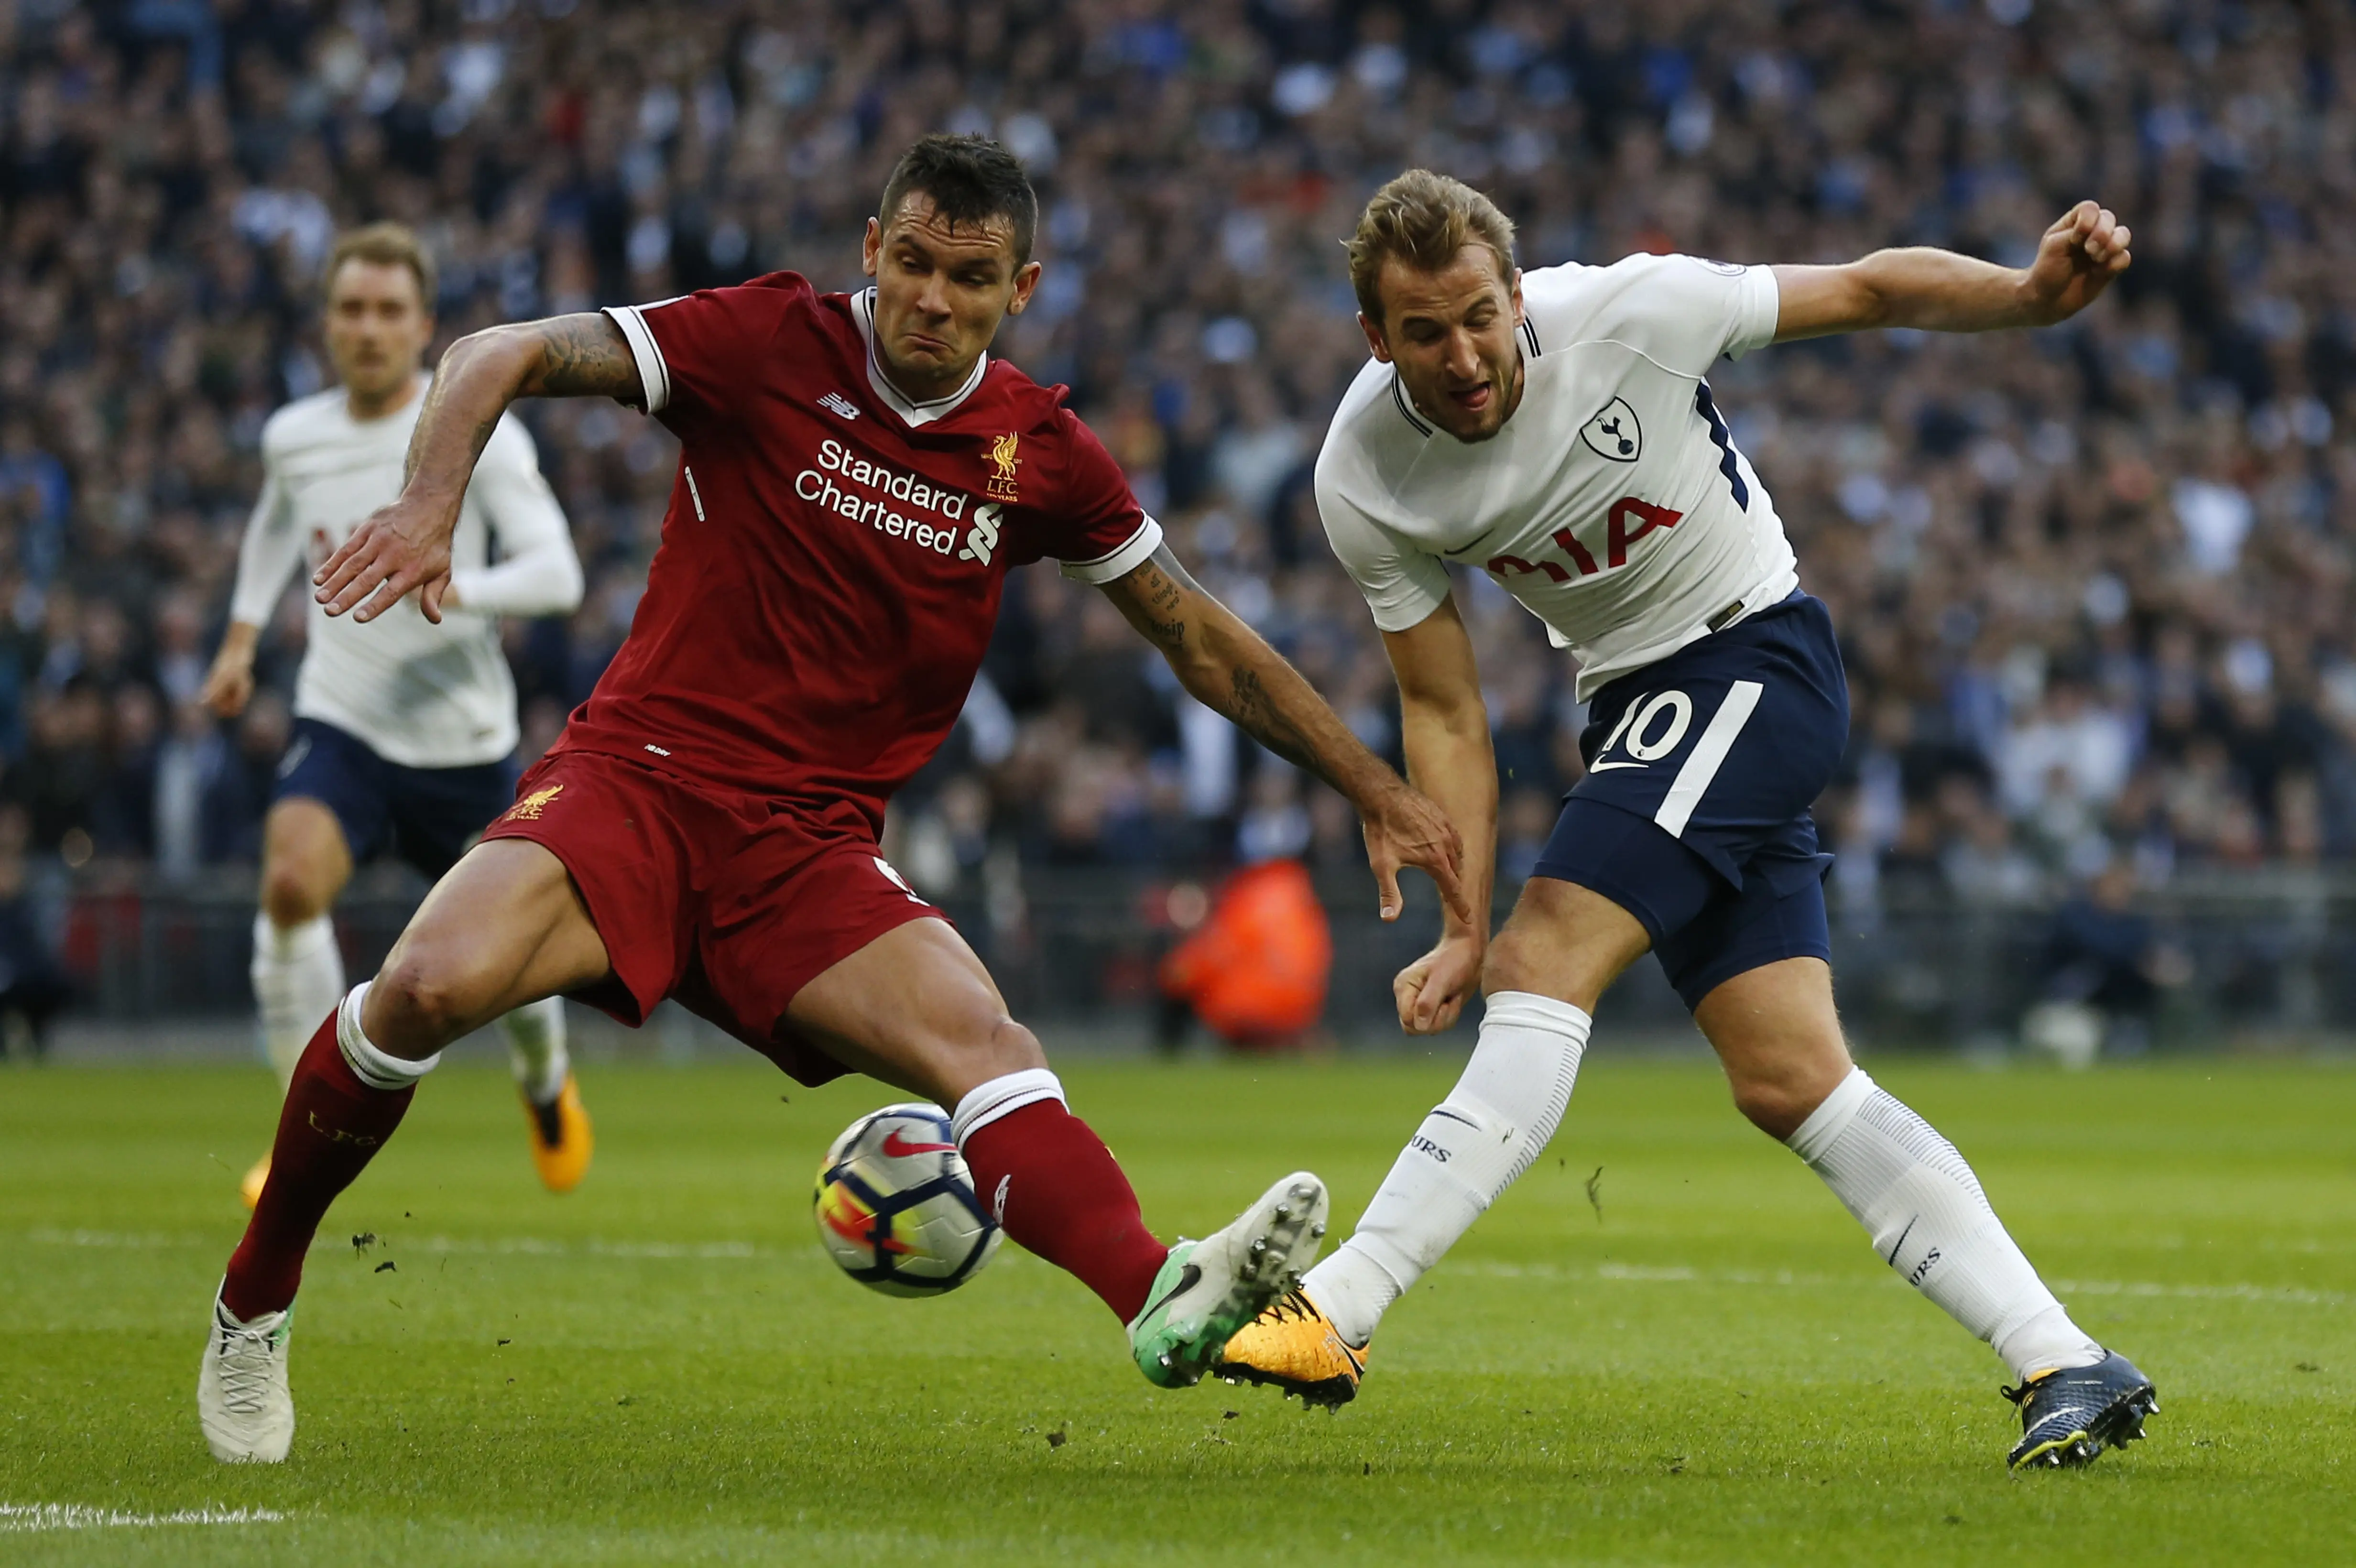 Bek Liverpool, Dejan Lovren (kiri), berjibaku dengan striker Tottenham Hotspur, Harry Kane pada lanjutan Liga Inggris di Wembley, Minggu (22/10/2017). (AFP/Ian Kington)